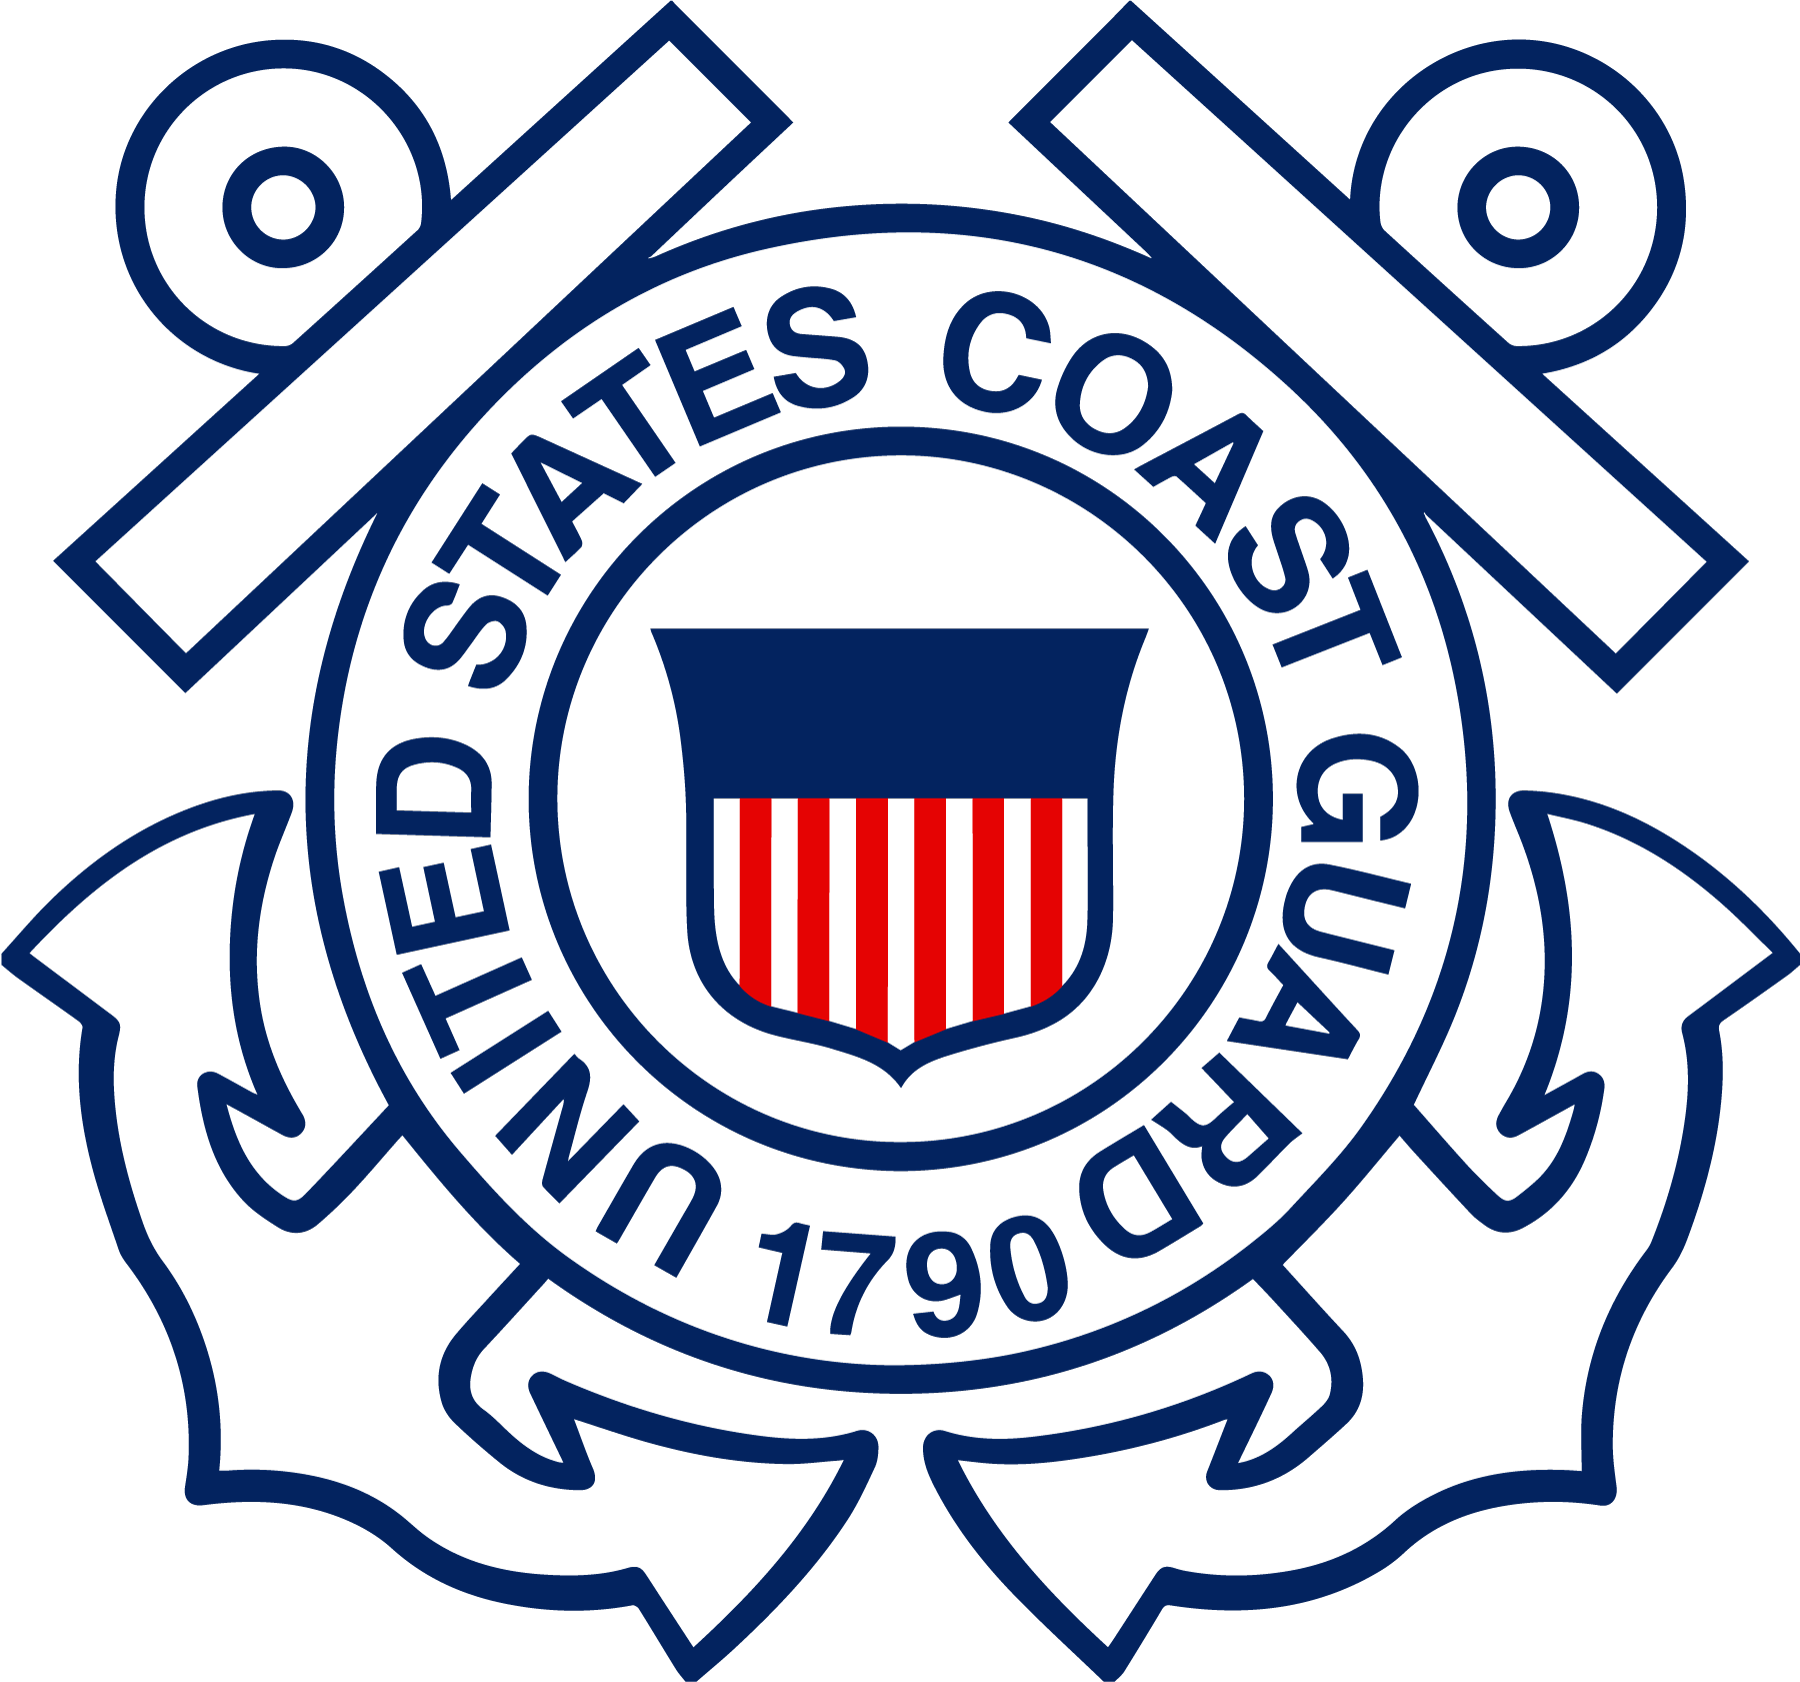 2 Coast Guard Emblem logo